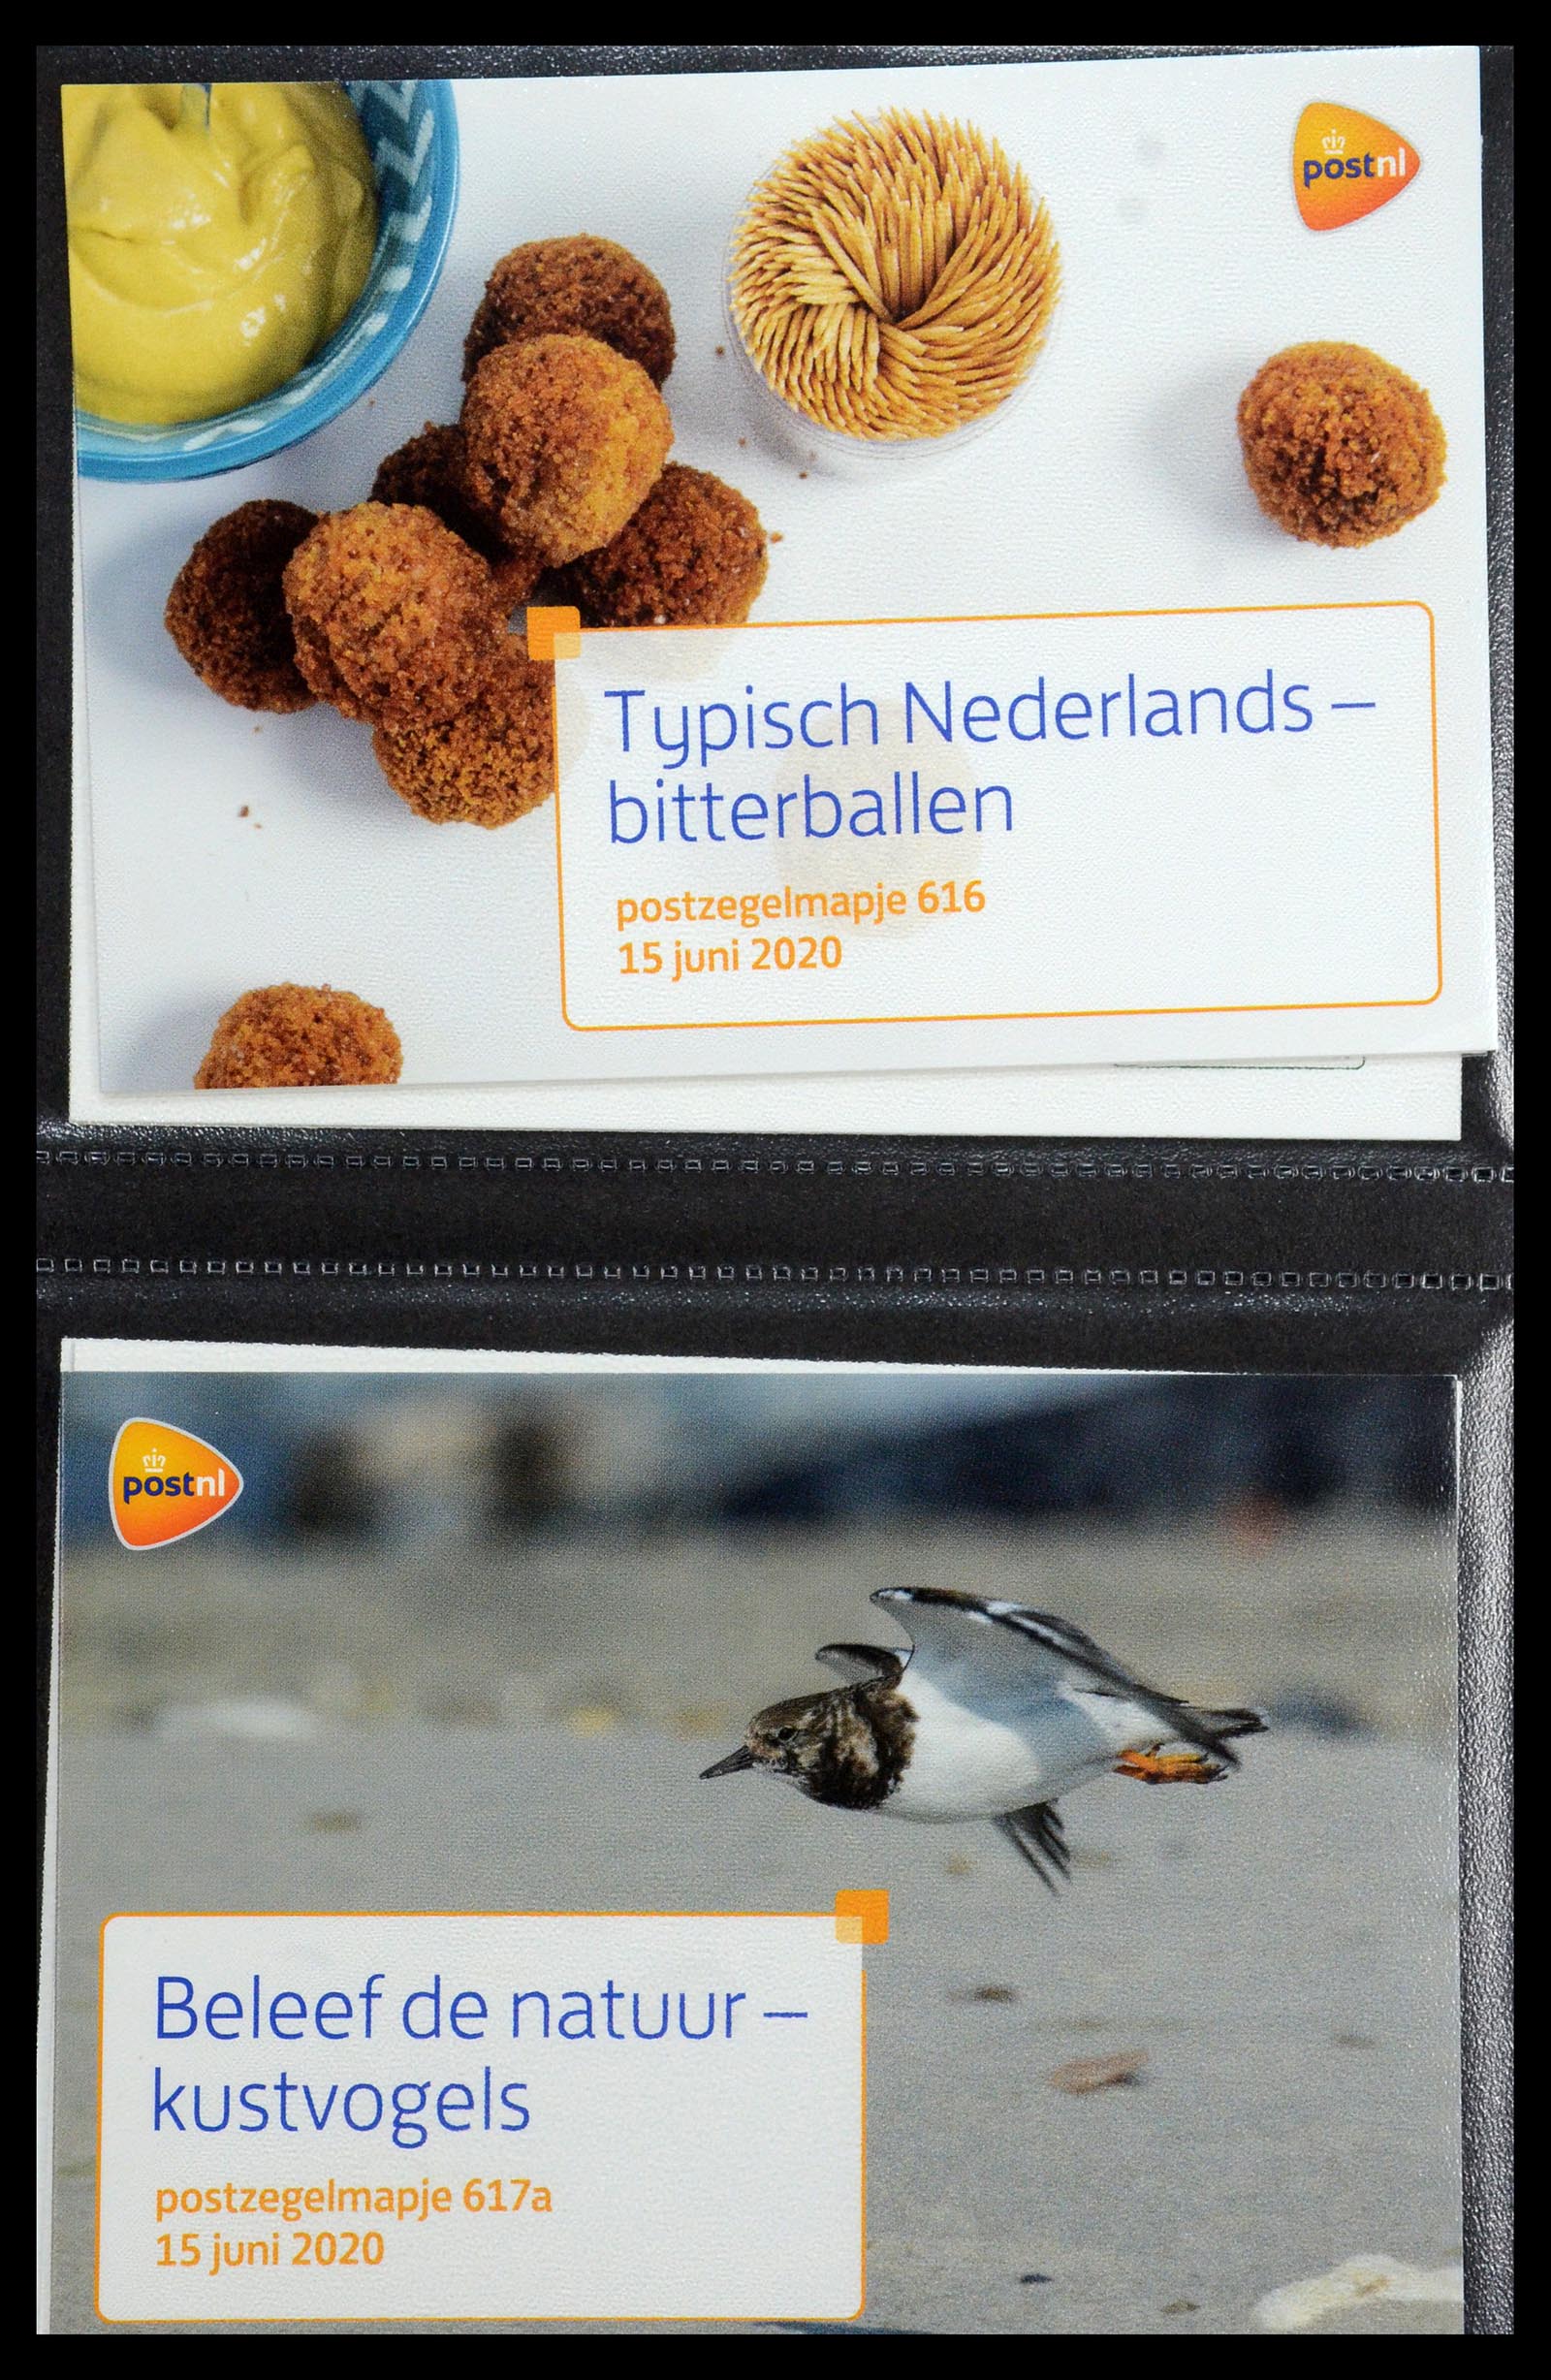 35144 373 - Stamp Collection 35144 Netherlands PTT presentation packs 1982-2021!